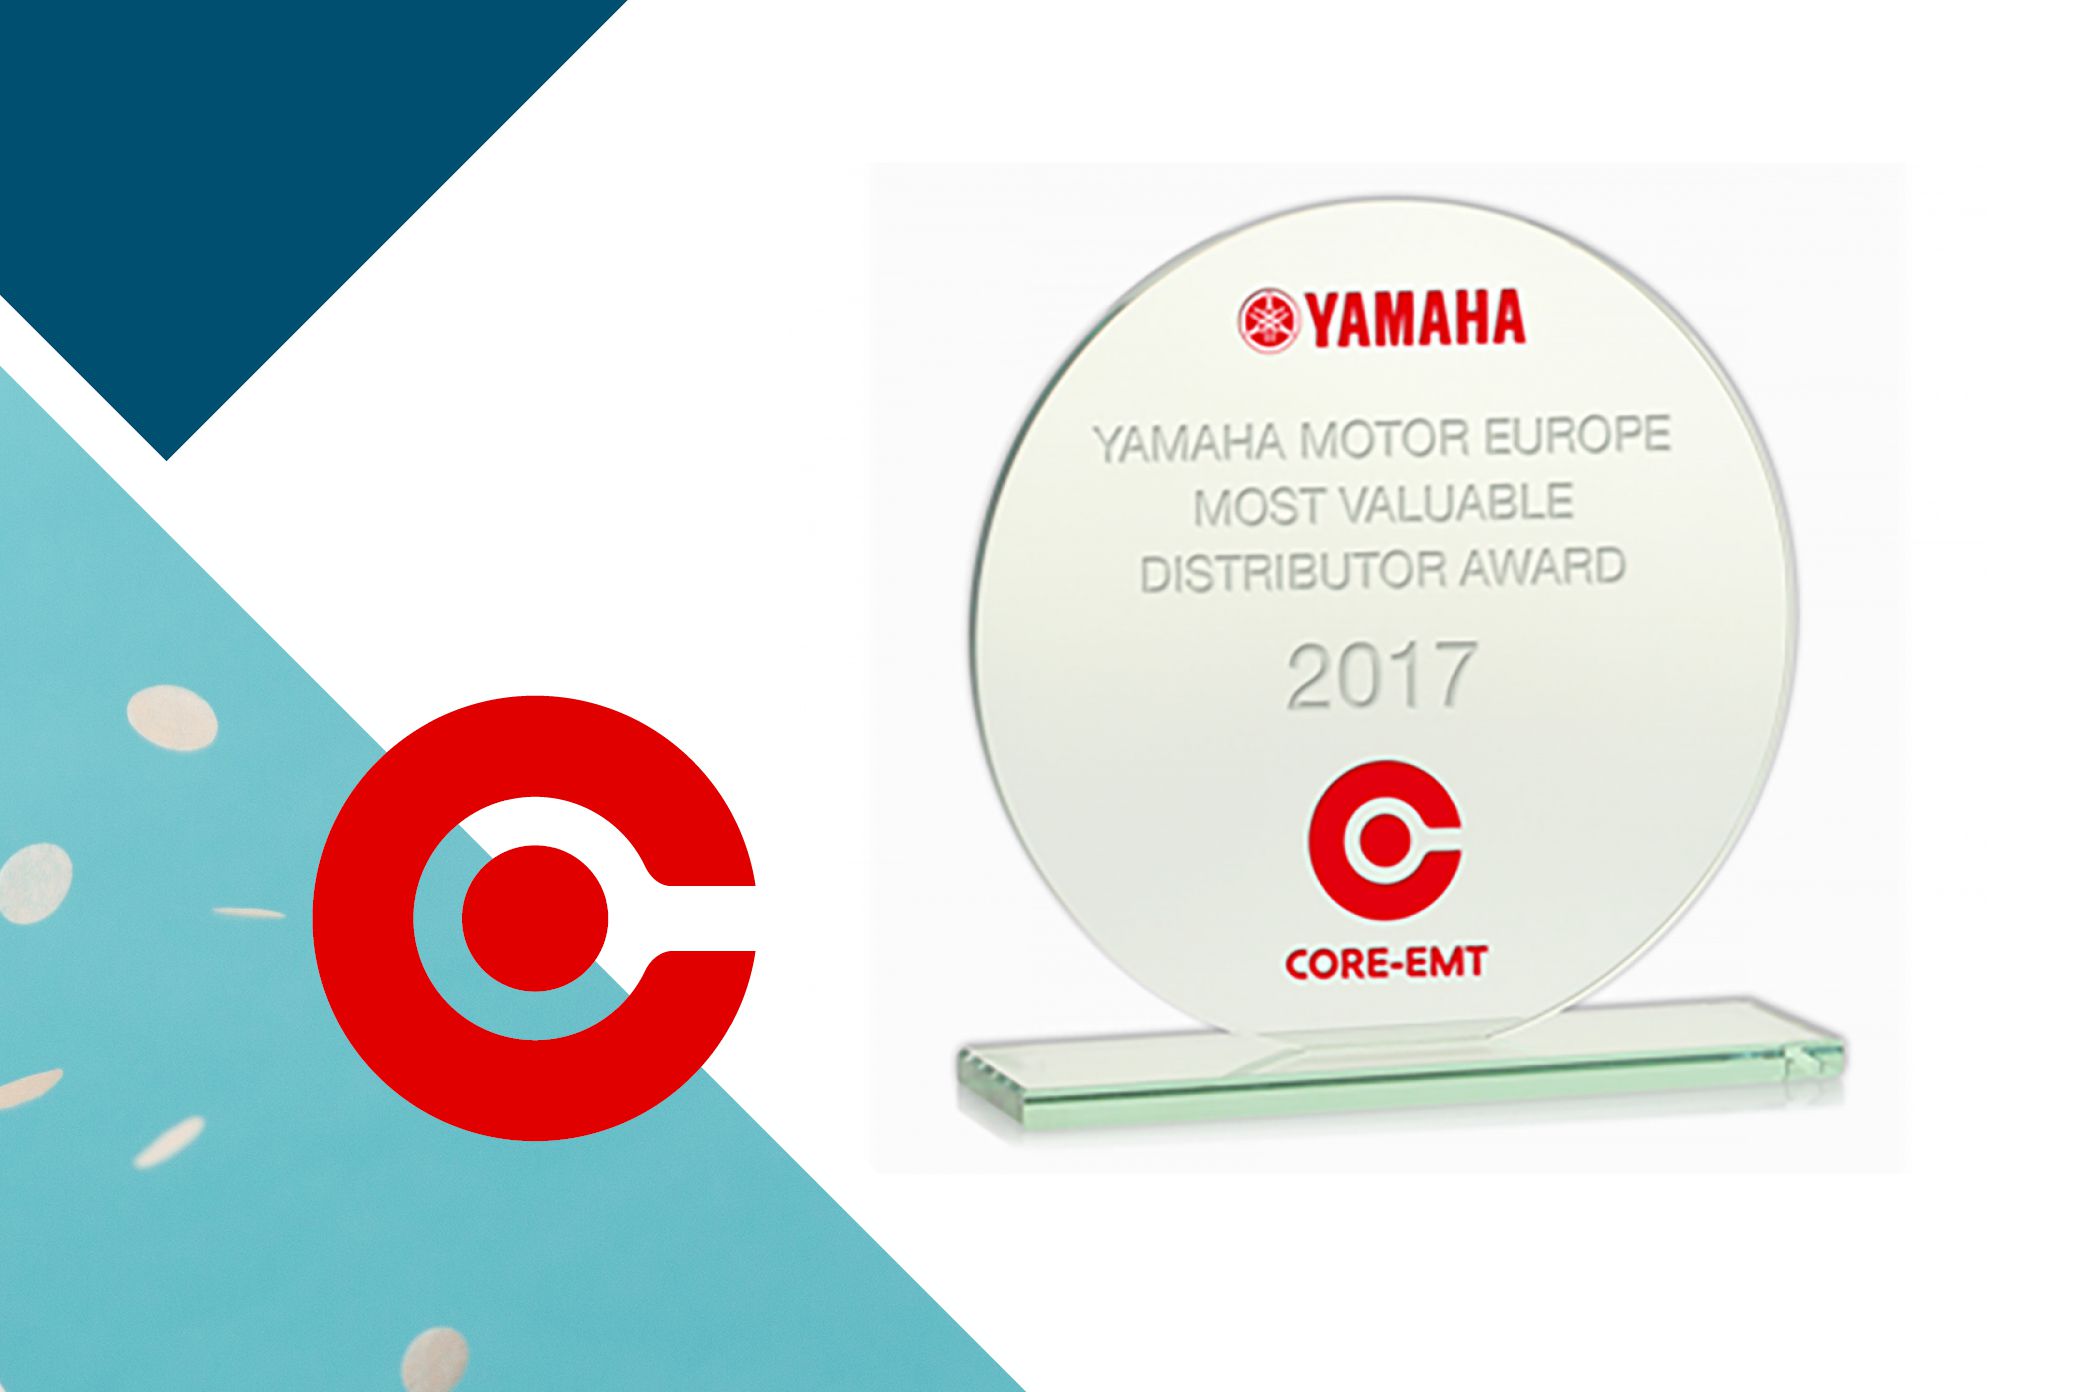 YAMAHA award to CORE-emt